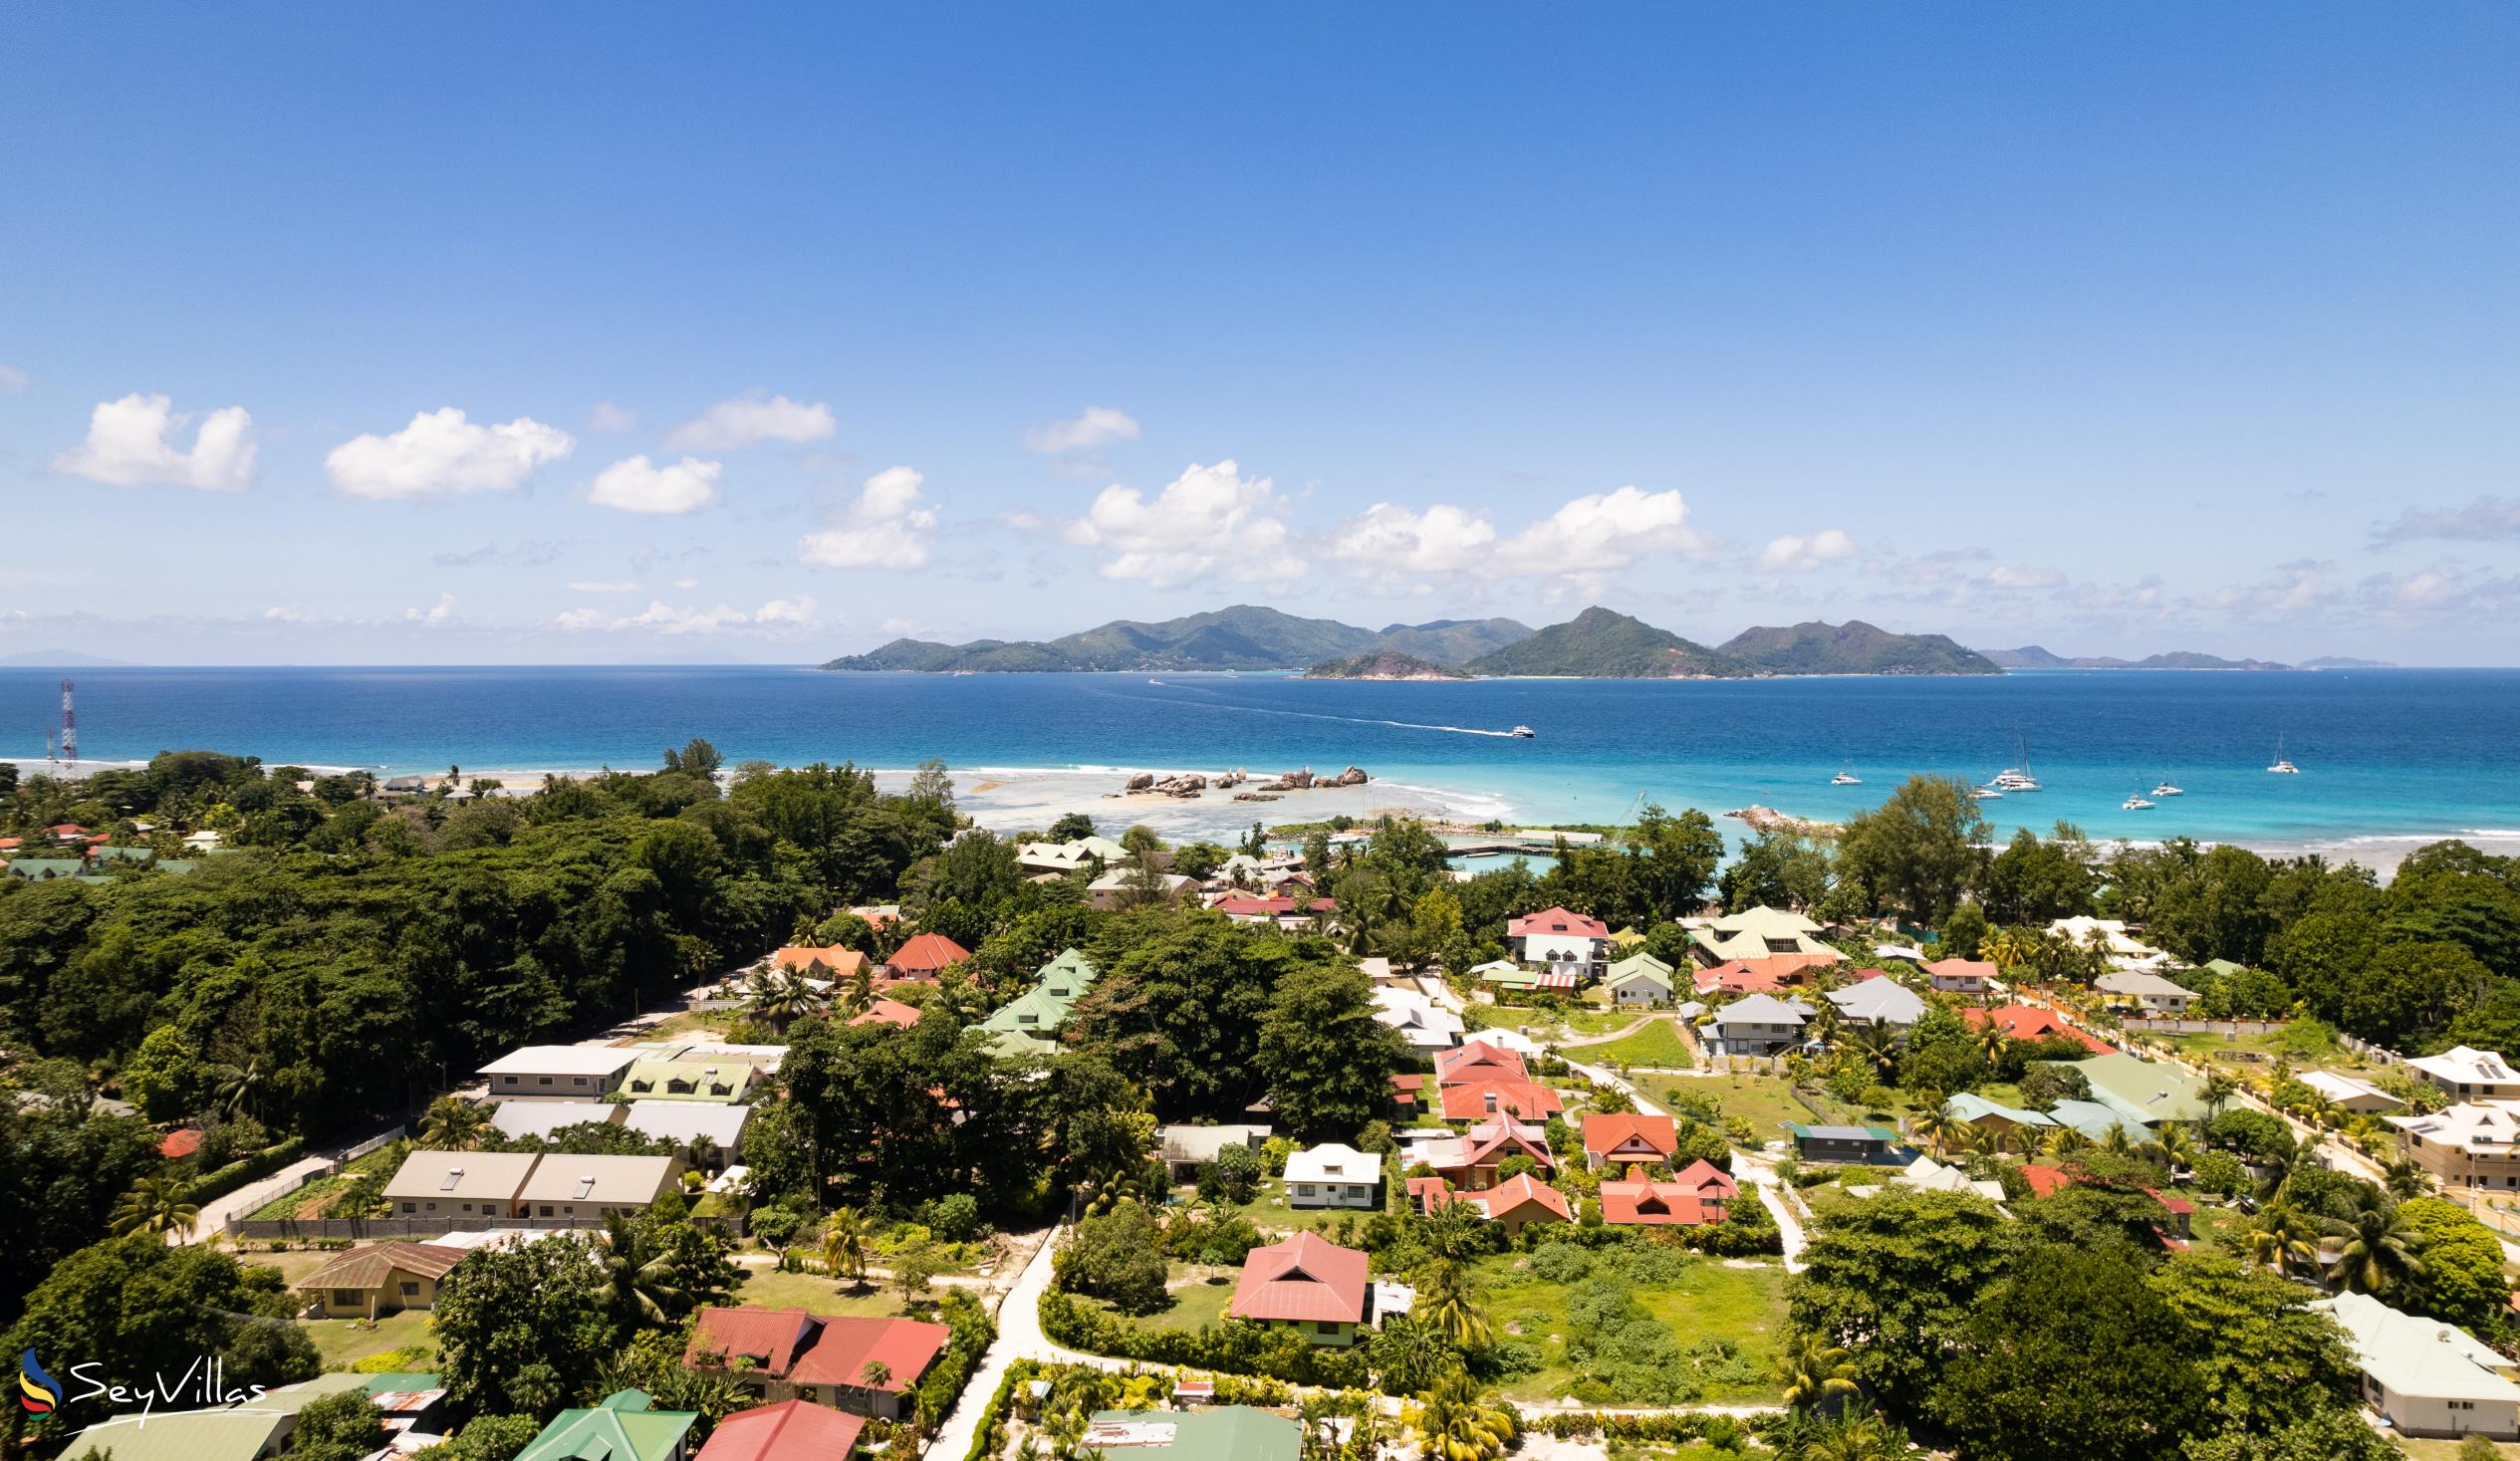 Foto 36: Buisson Guest House - Posizione - La Digue (Seychelles)